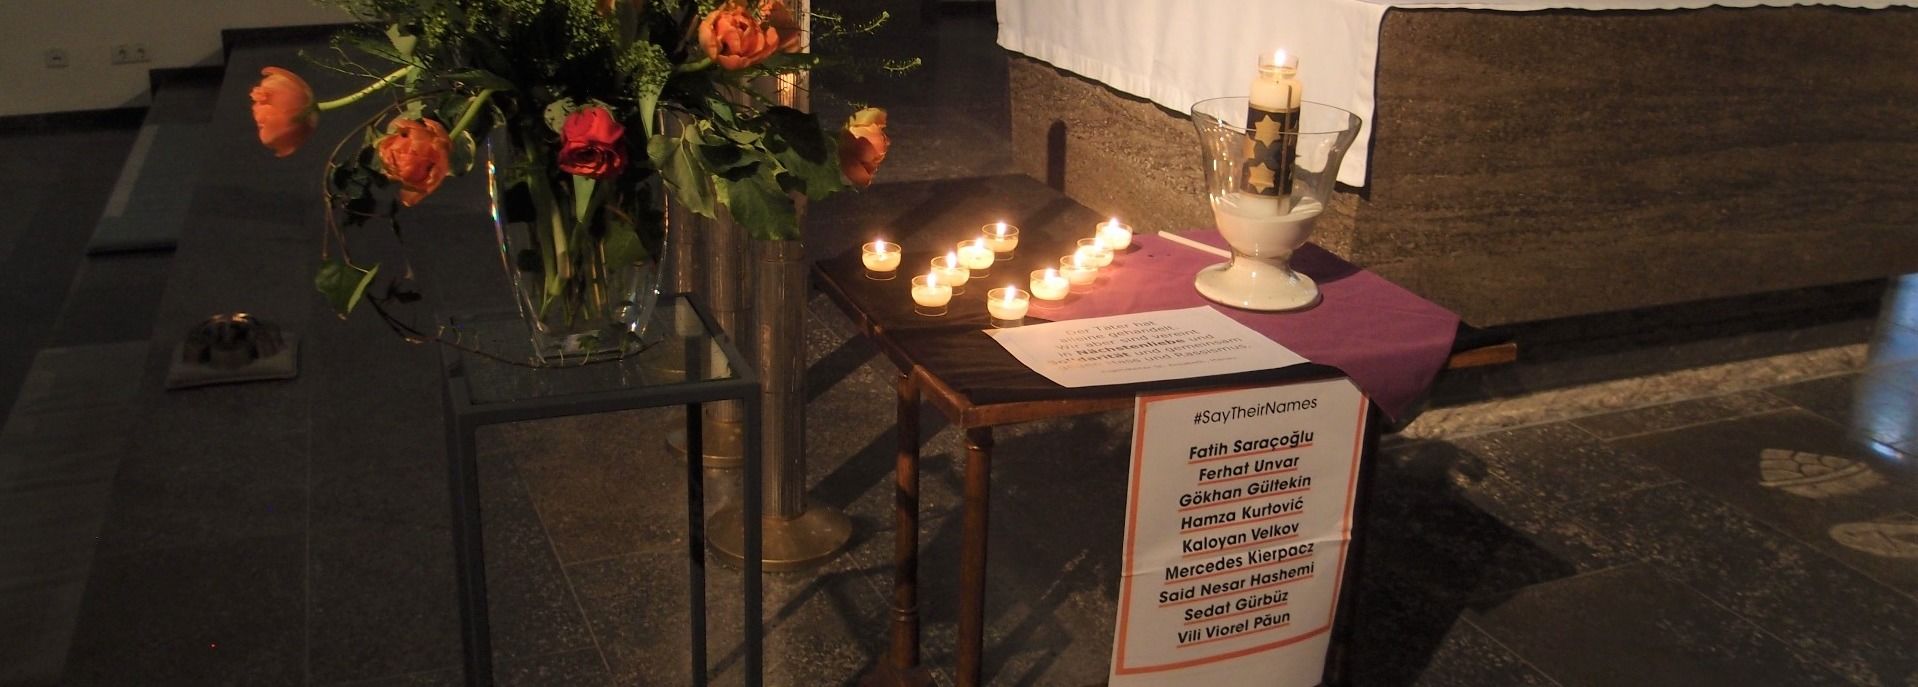 Gedenken an die Opfer des 19. Februar und ihre Familien